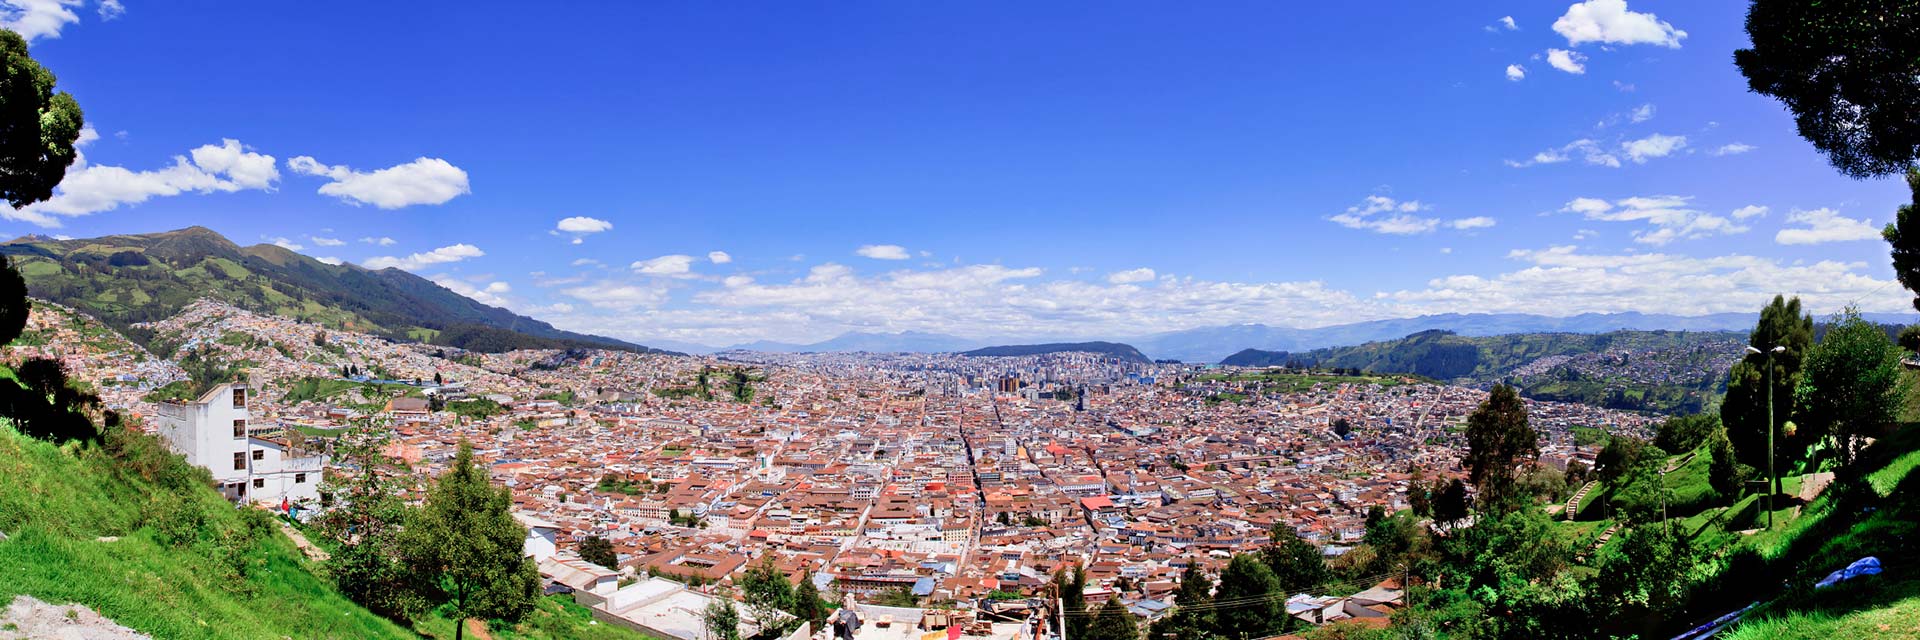 Spanisch Sprachreise nach Quito - © Pablo Hidalgo